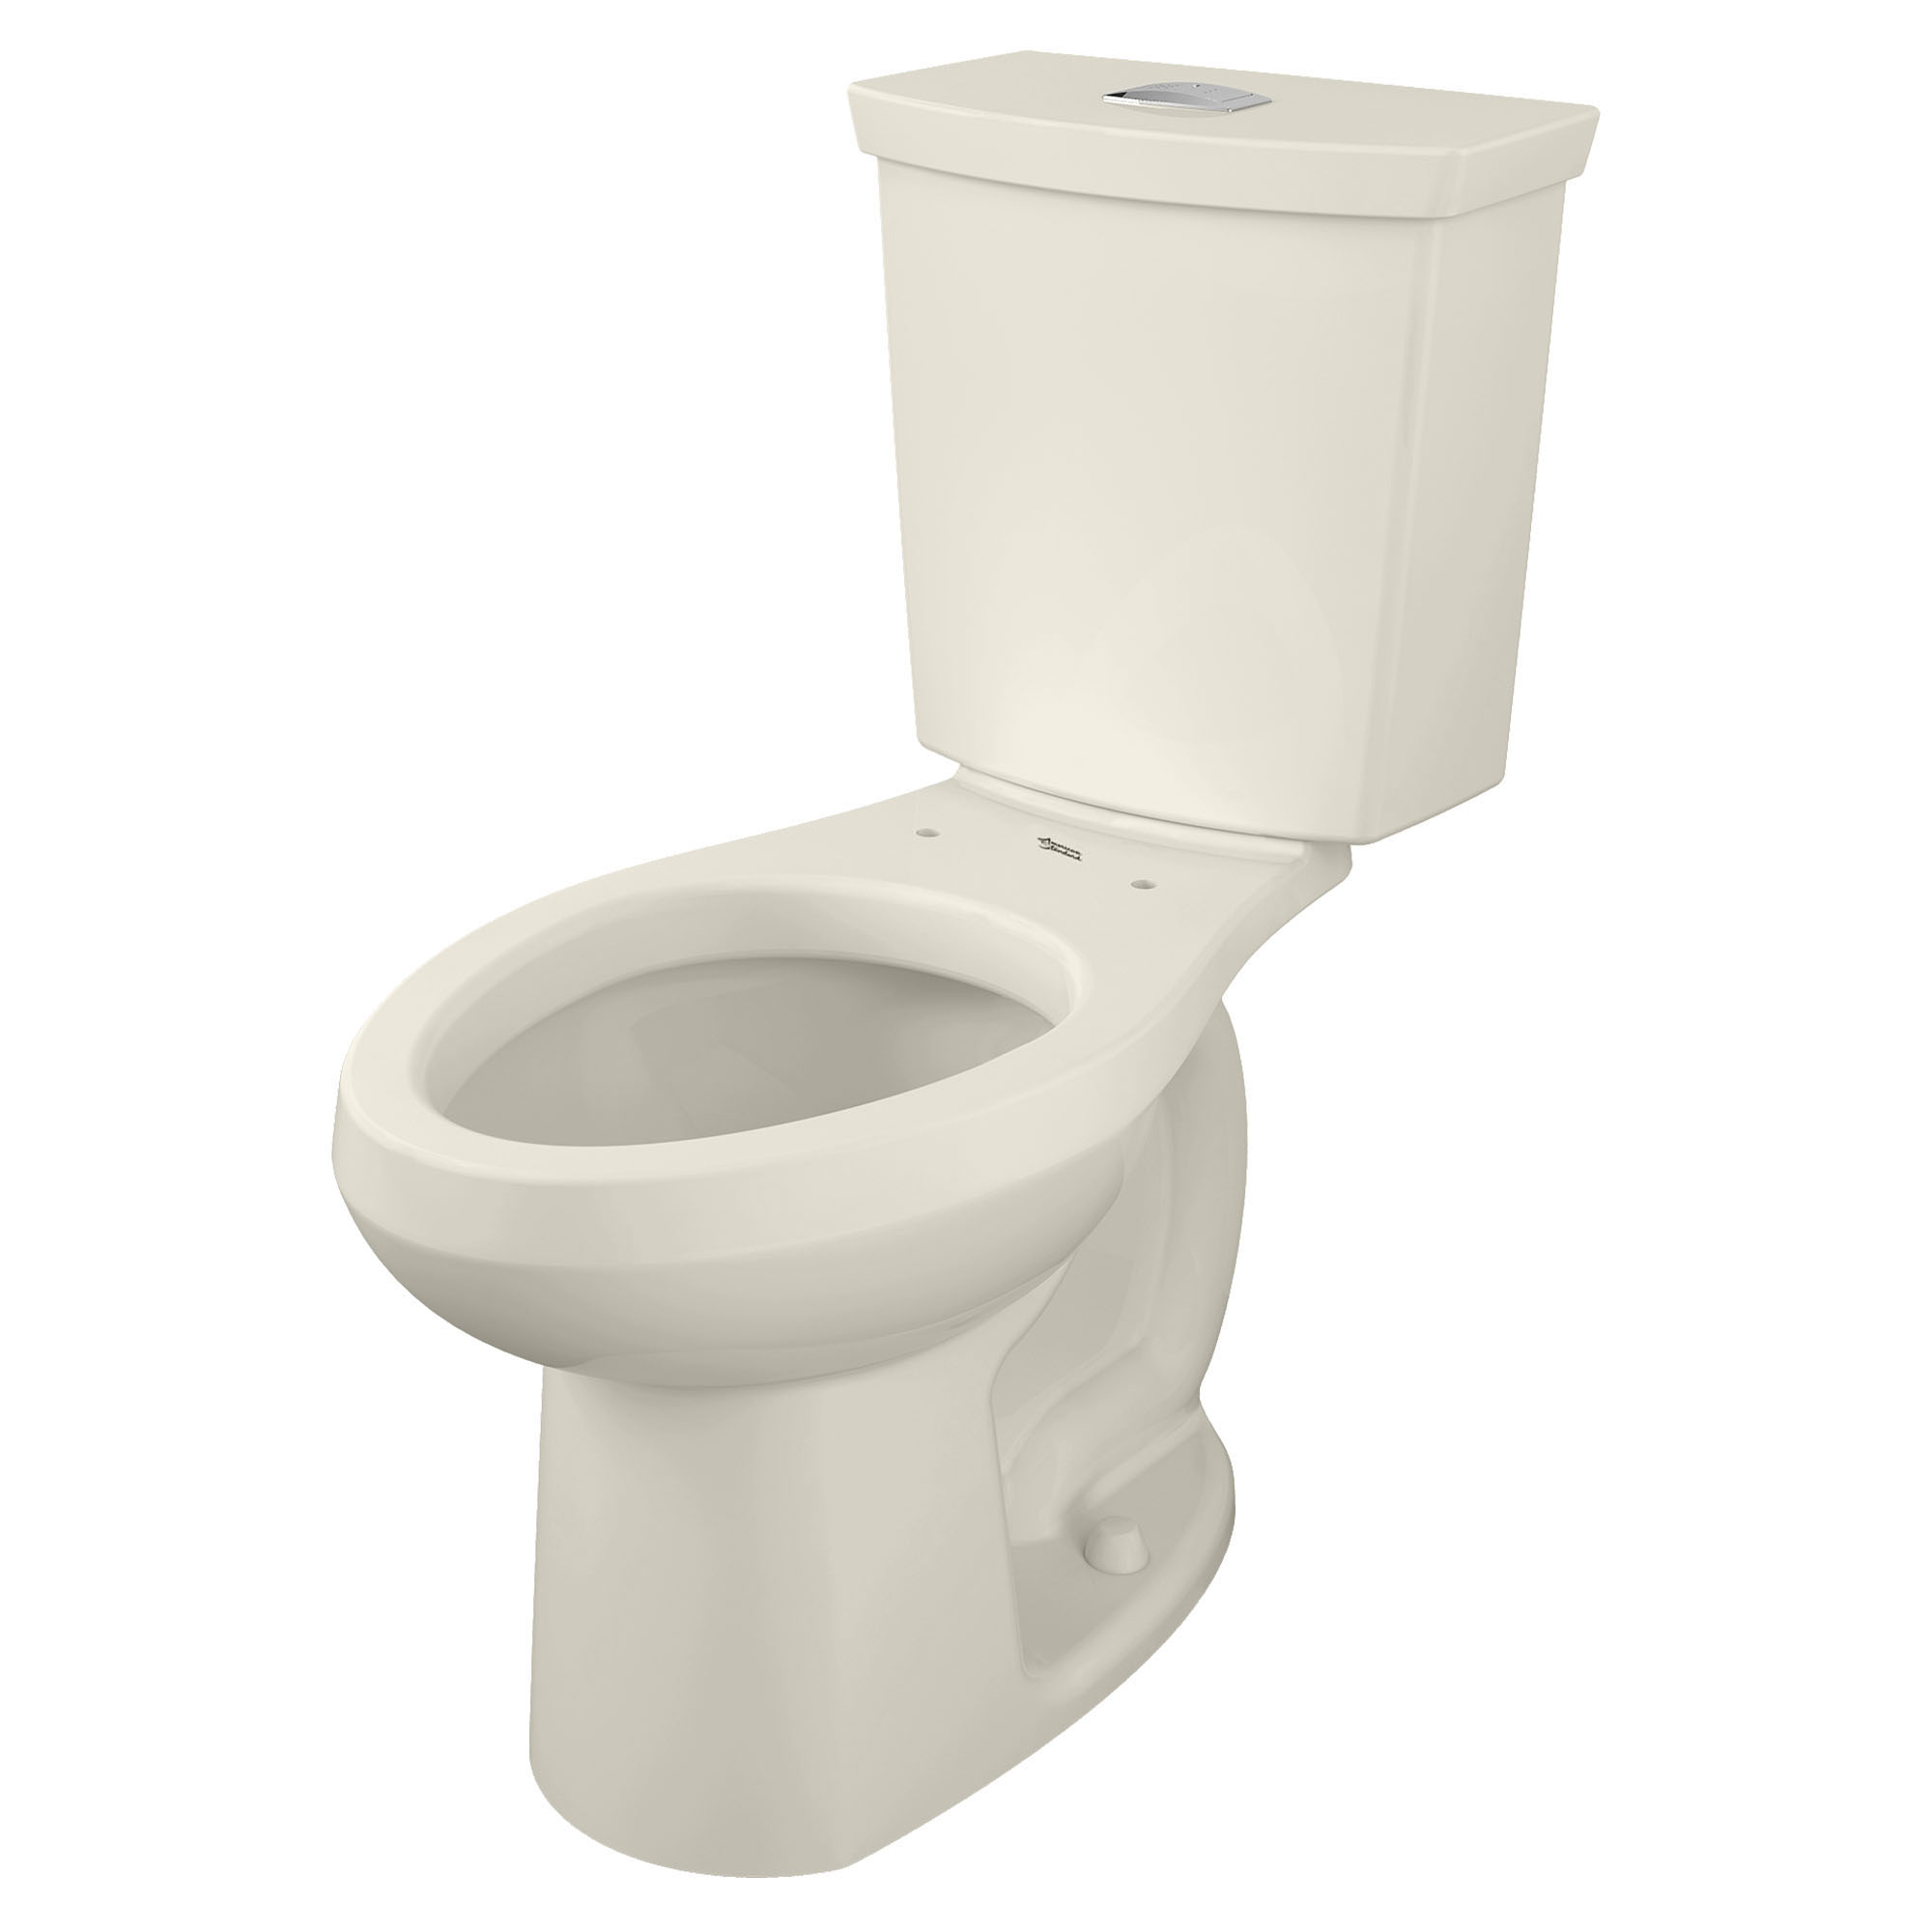 Toilette H2Option, 2 pièces, chasse double 1,28 gpc/4,8 lpc et 0,92 gpc/3,5 lpc, à cuvette allongée à hauteur de chaise, sans siège